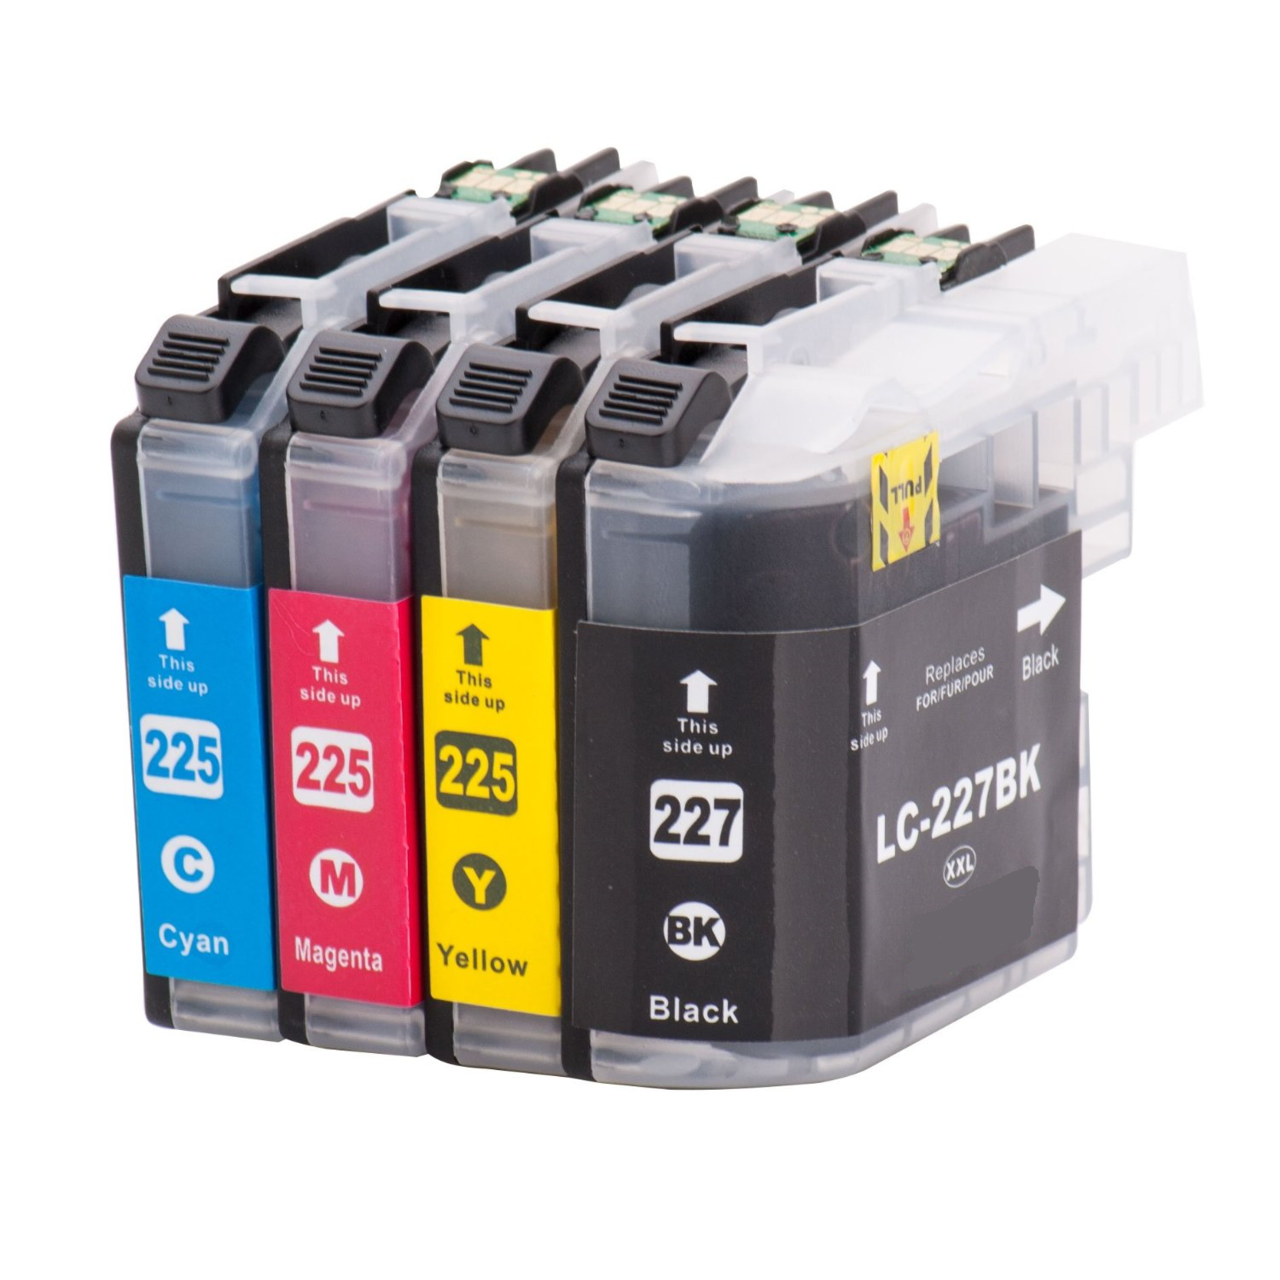 Brother LC-227XL / LC-225XL inktcartridges voordeelset Inkt-cartridges.nl - Inkt-cartridges.nl | Printer Cartridges, Inkt Cartridges, Inkt Patronen, Printer Inkt, Goedkoop, Voordelig